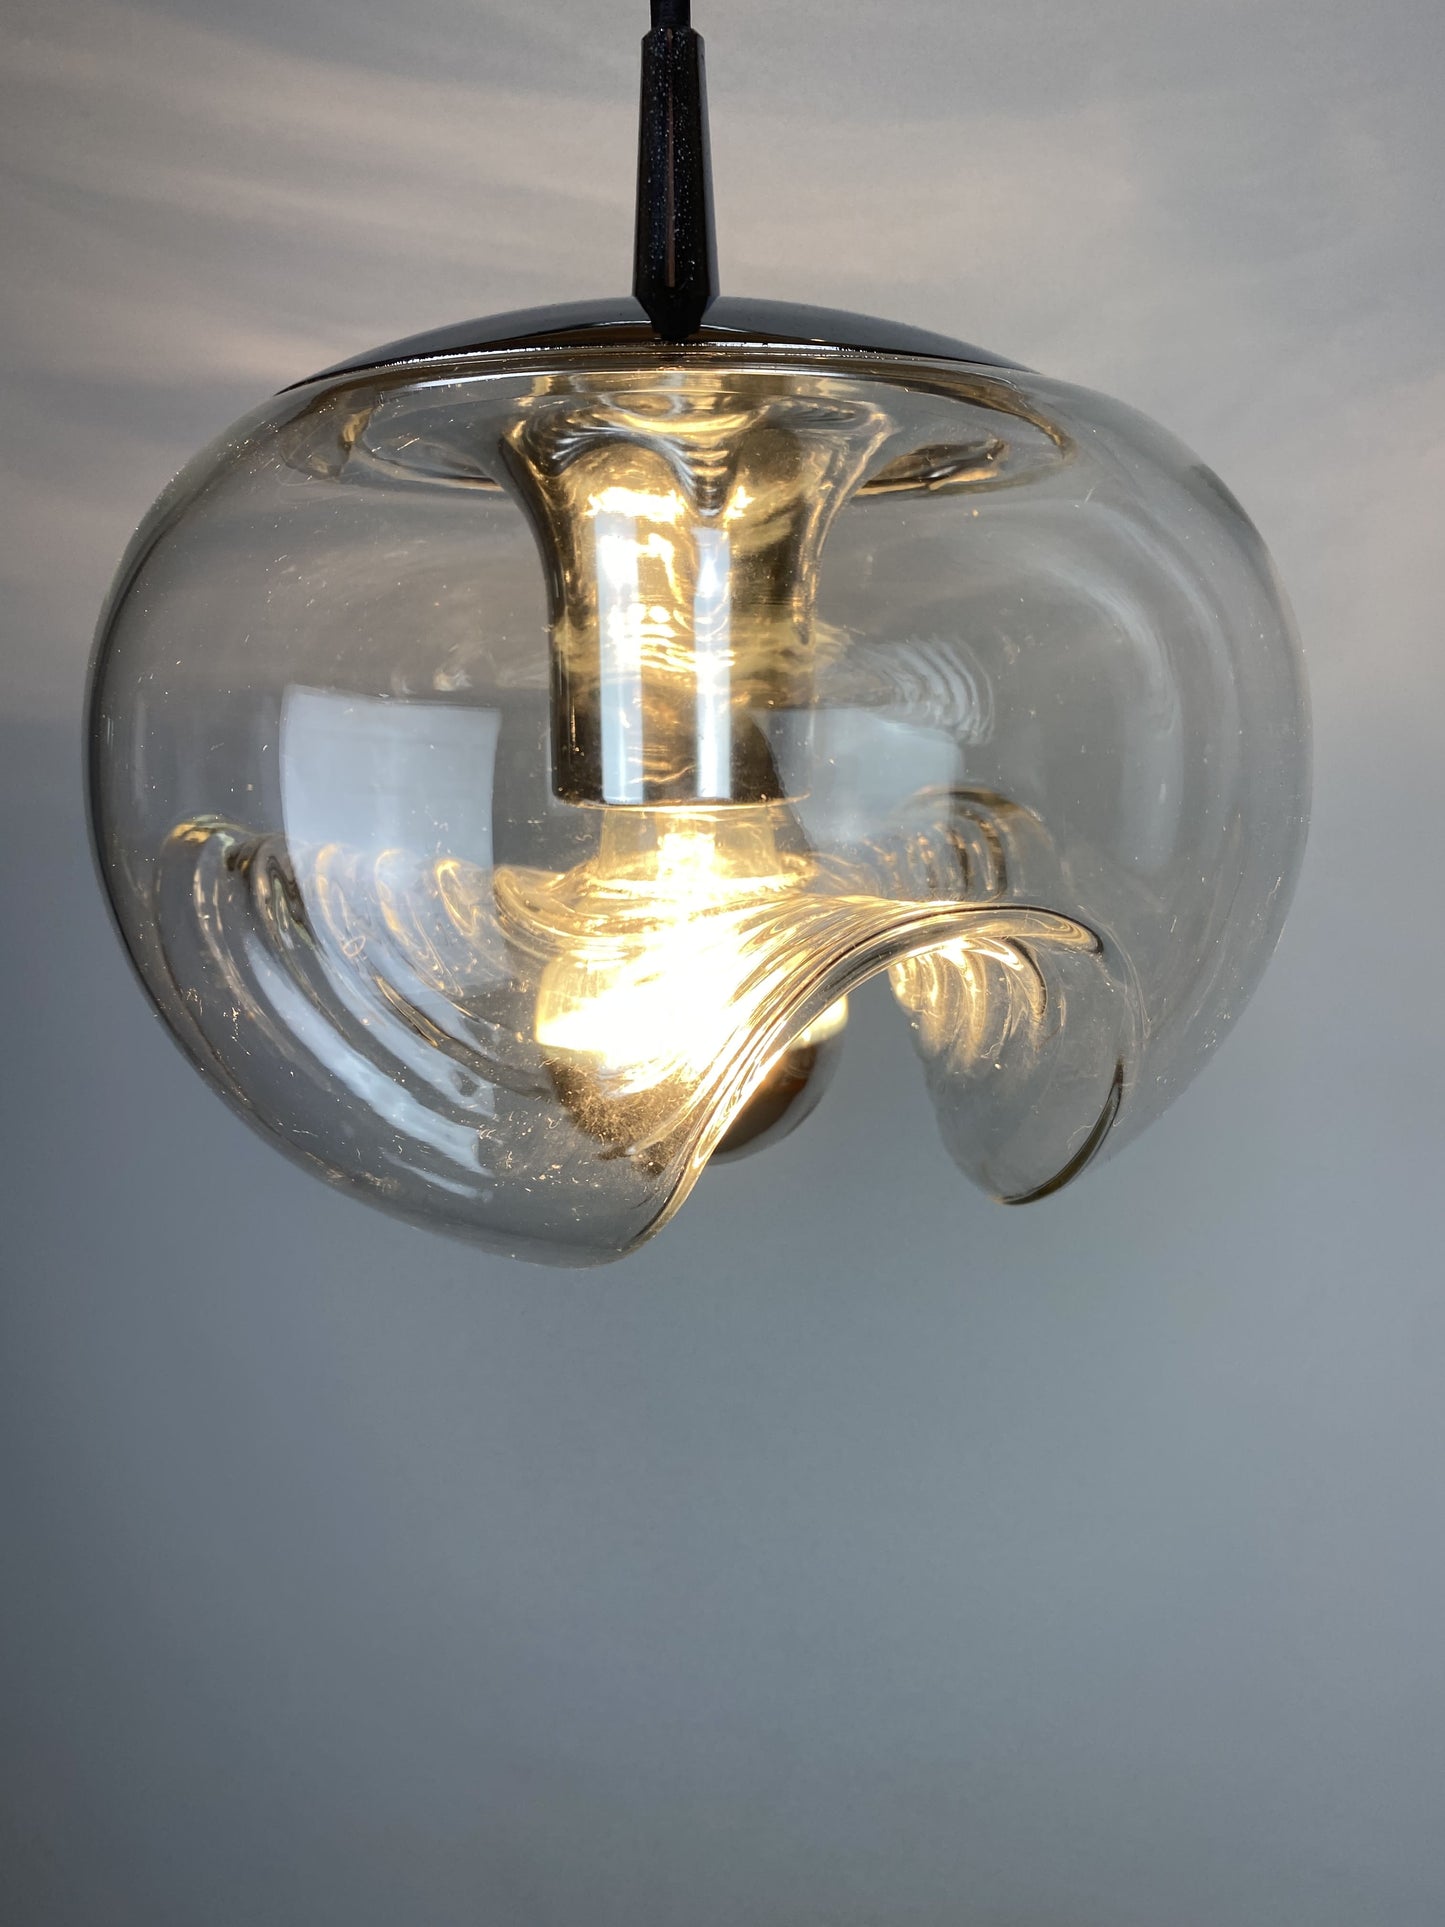 Waved glass and chrome Peill & Putzler Futura pendant light 1970